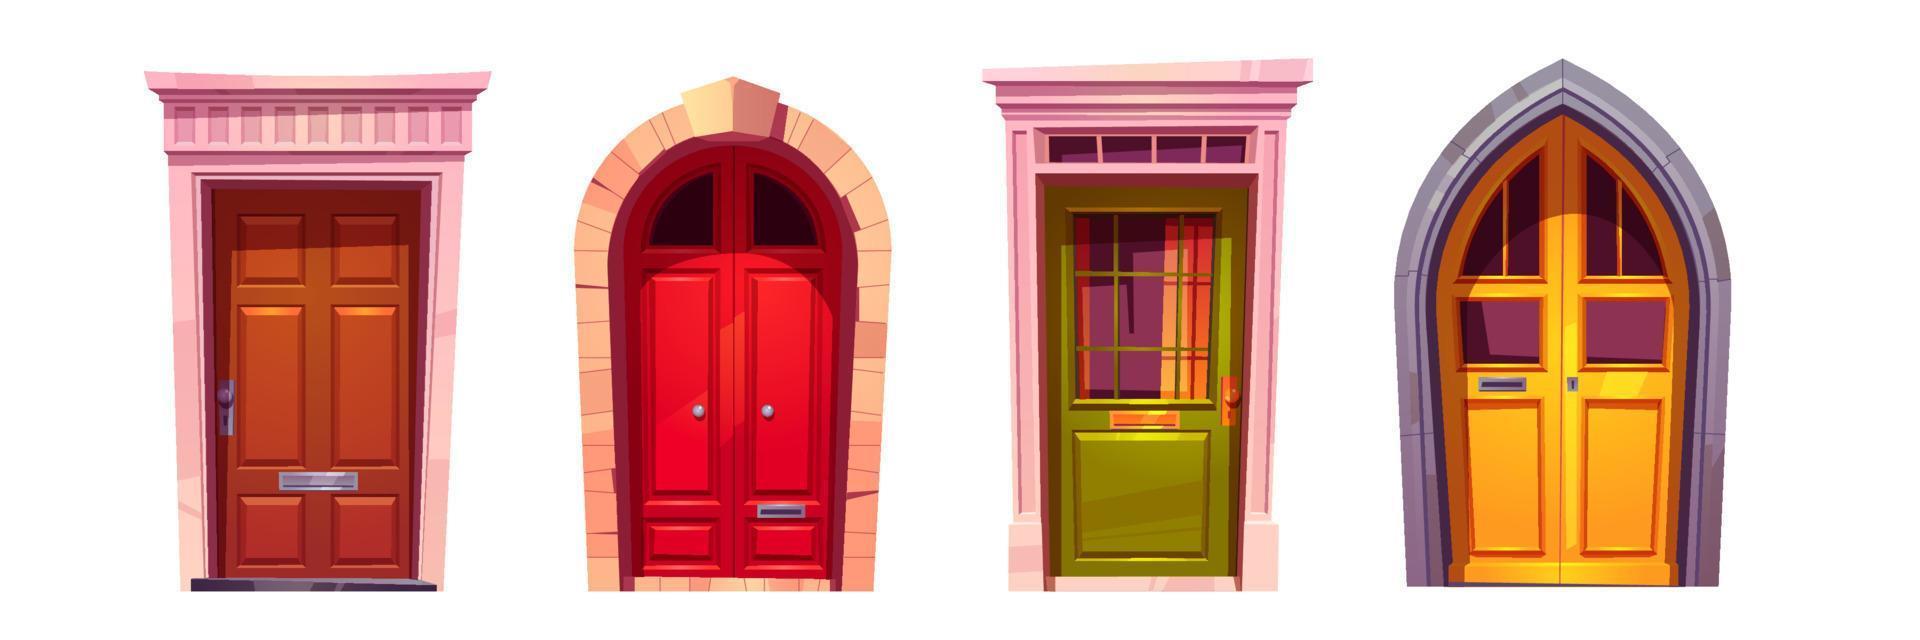 Wooden front doors with stone doorway vector